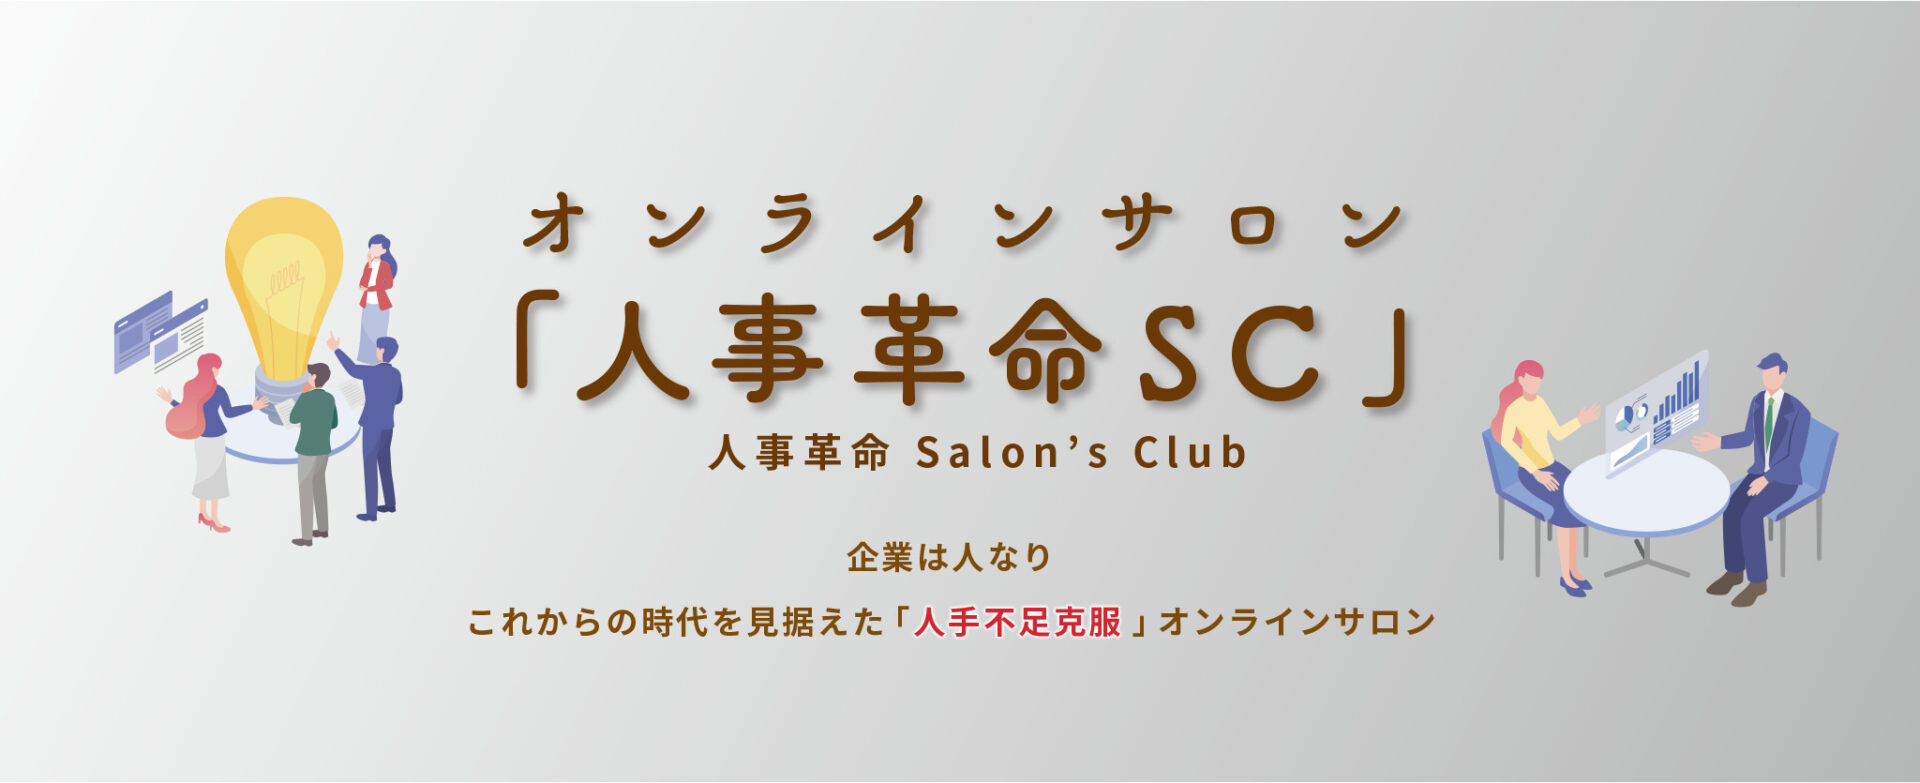 オンラインサロン-人事改革sc-人事革命salons-club